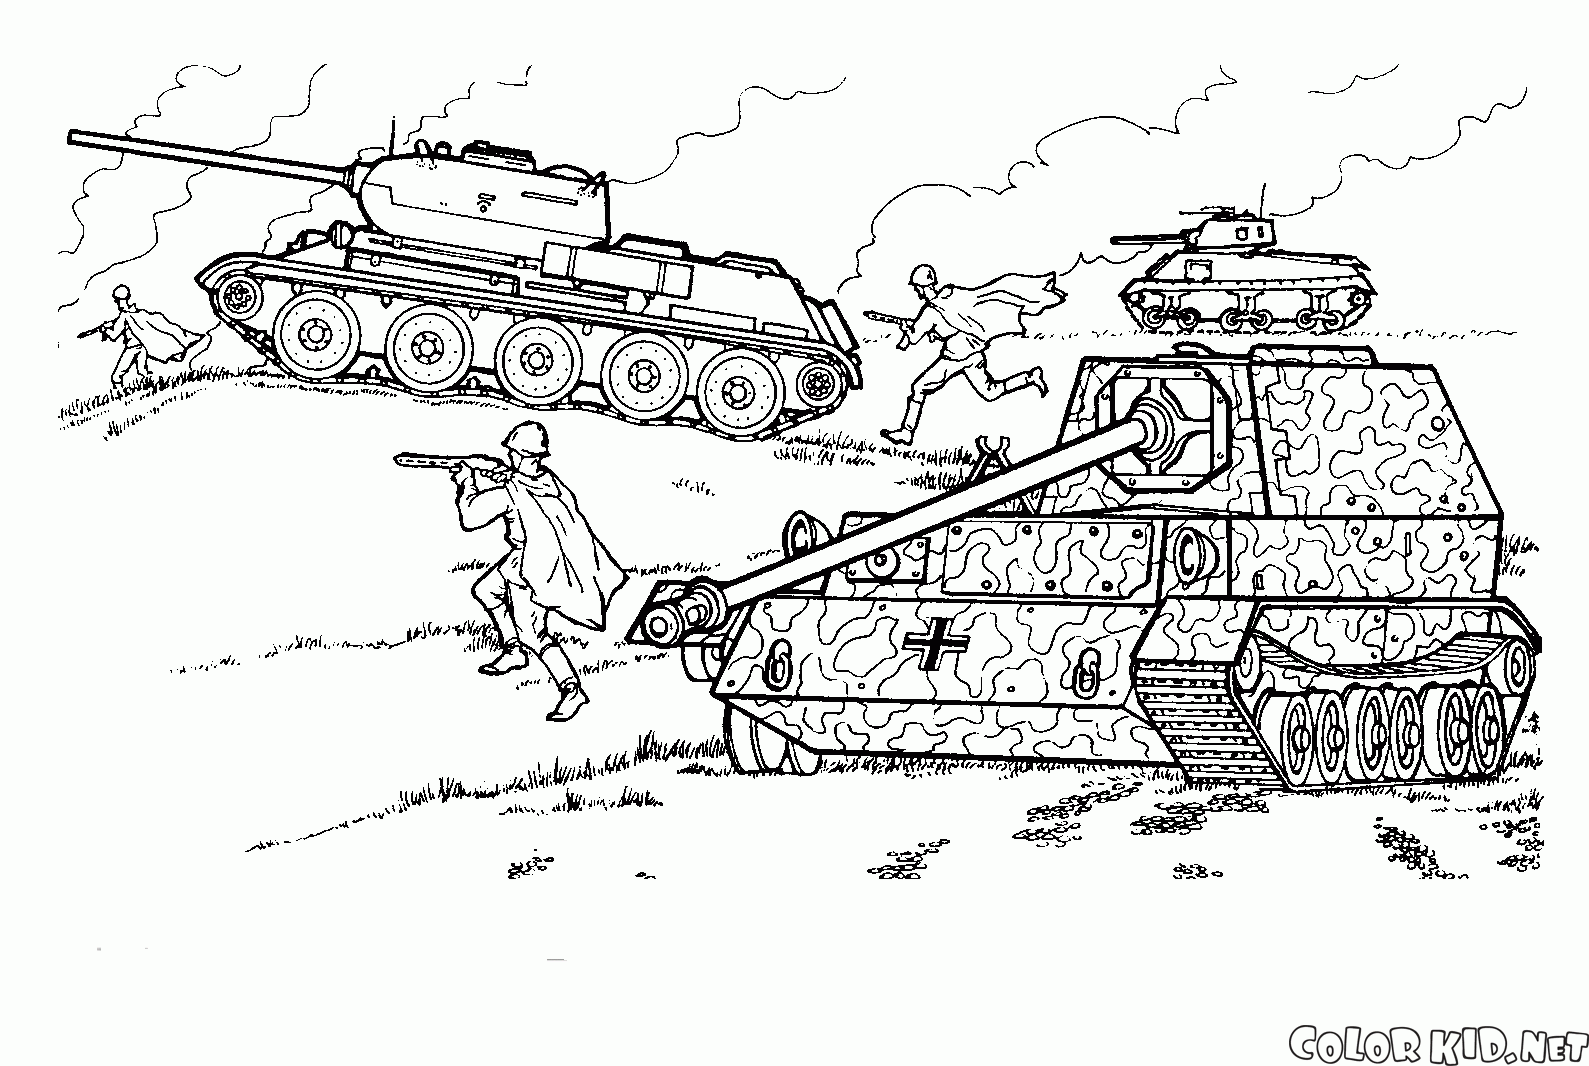 T-34 in einer Schlacht